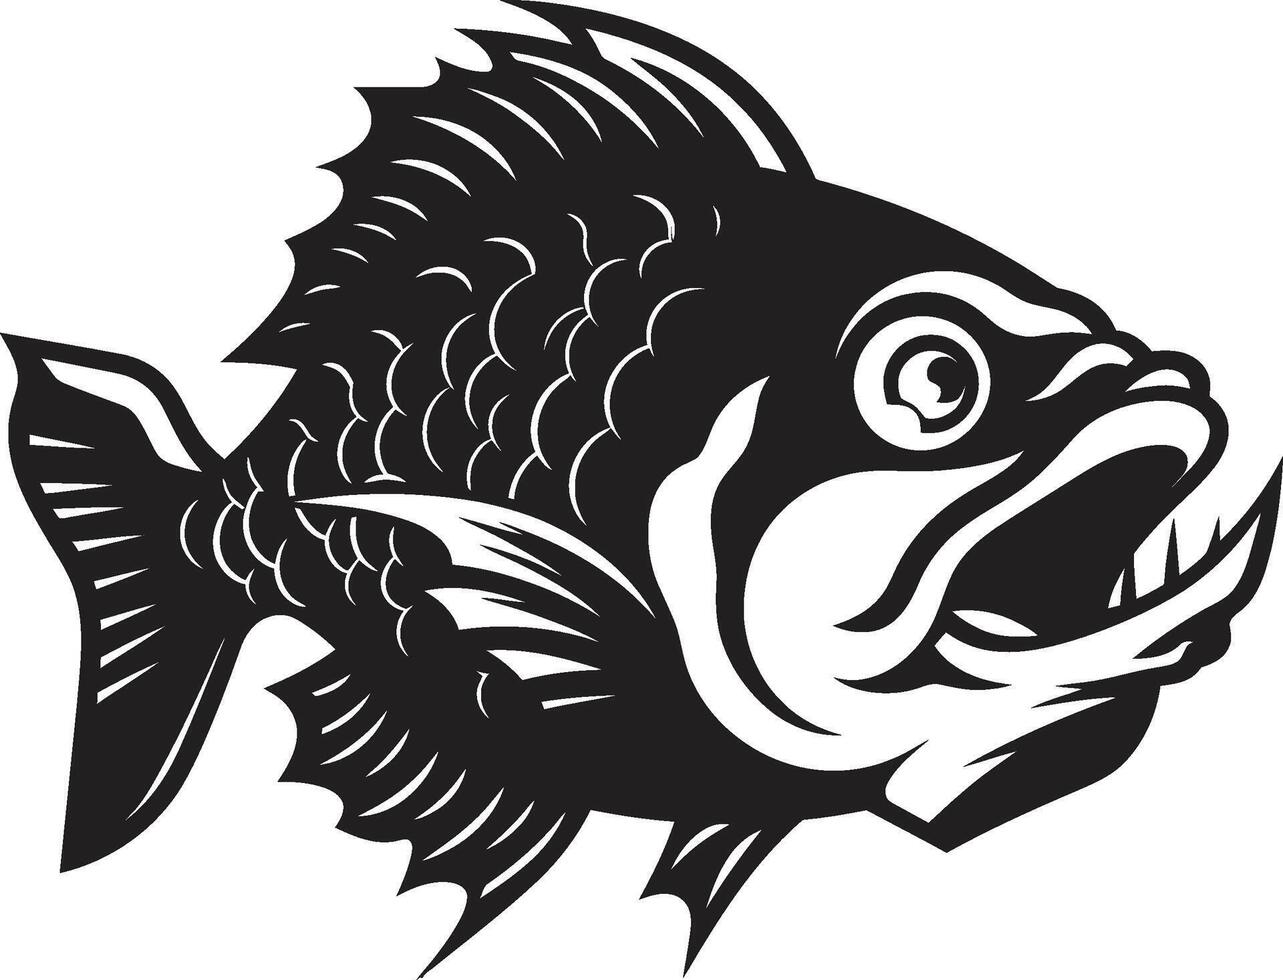 rakapparat tänder släpptes loss samtida logotyp med eleganta piranha predatory tvinga invecklad svart ikon illustration för modern branding vektor